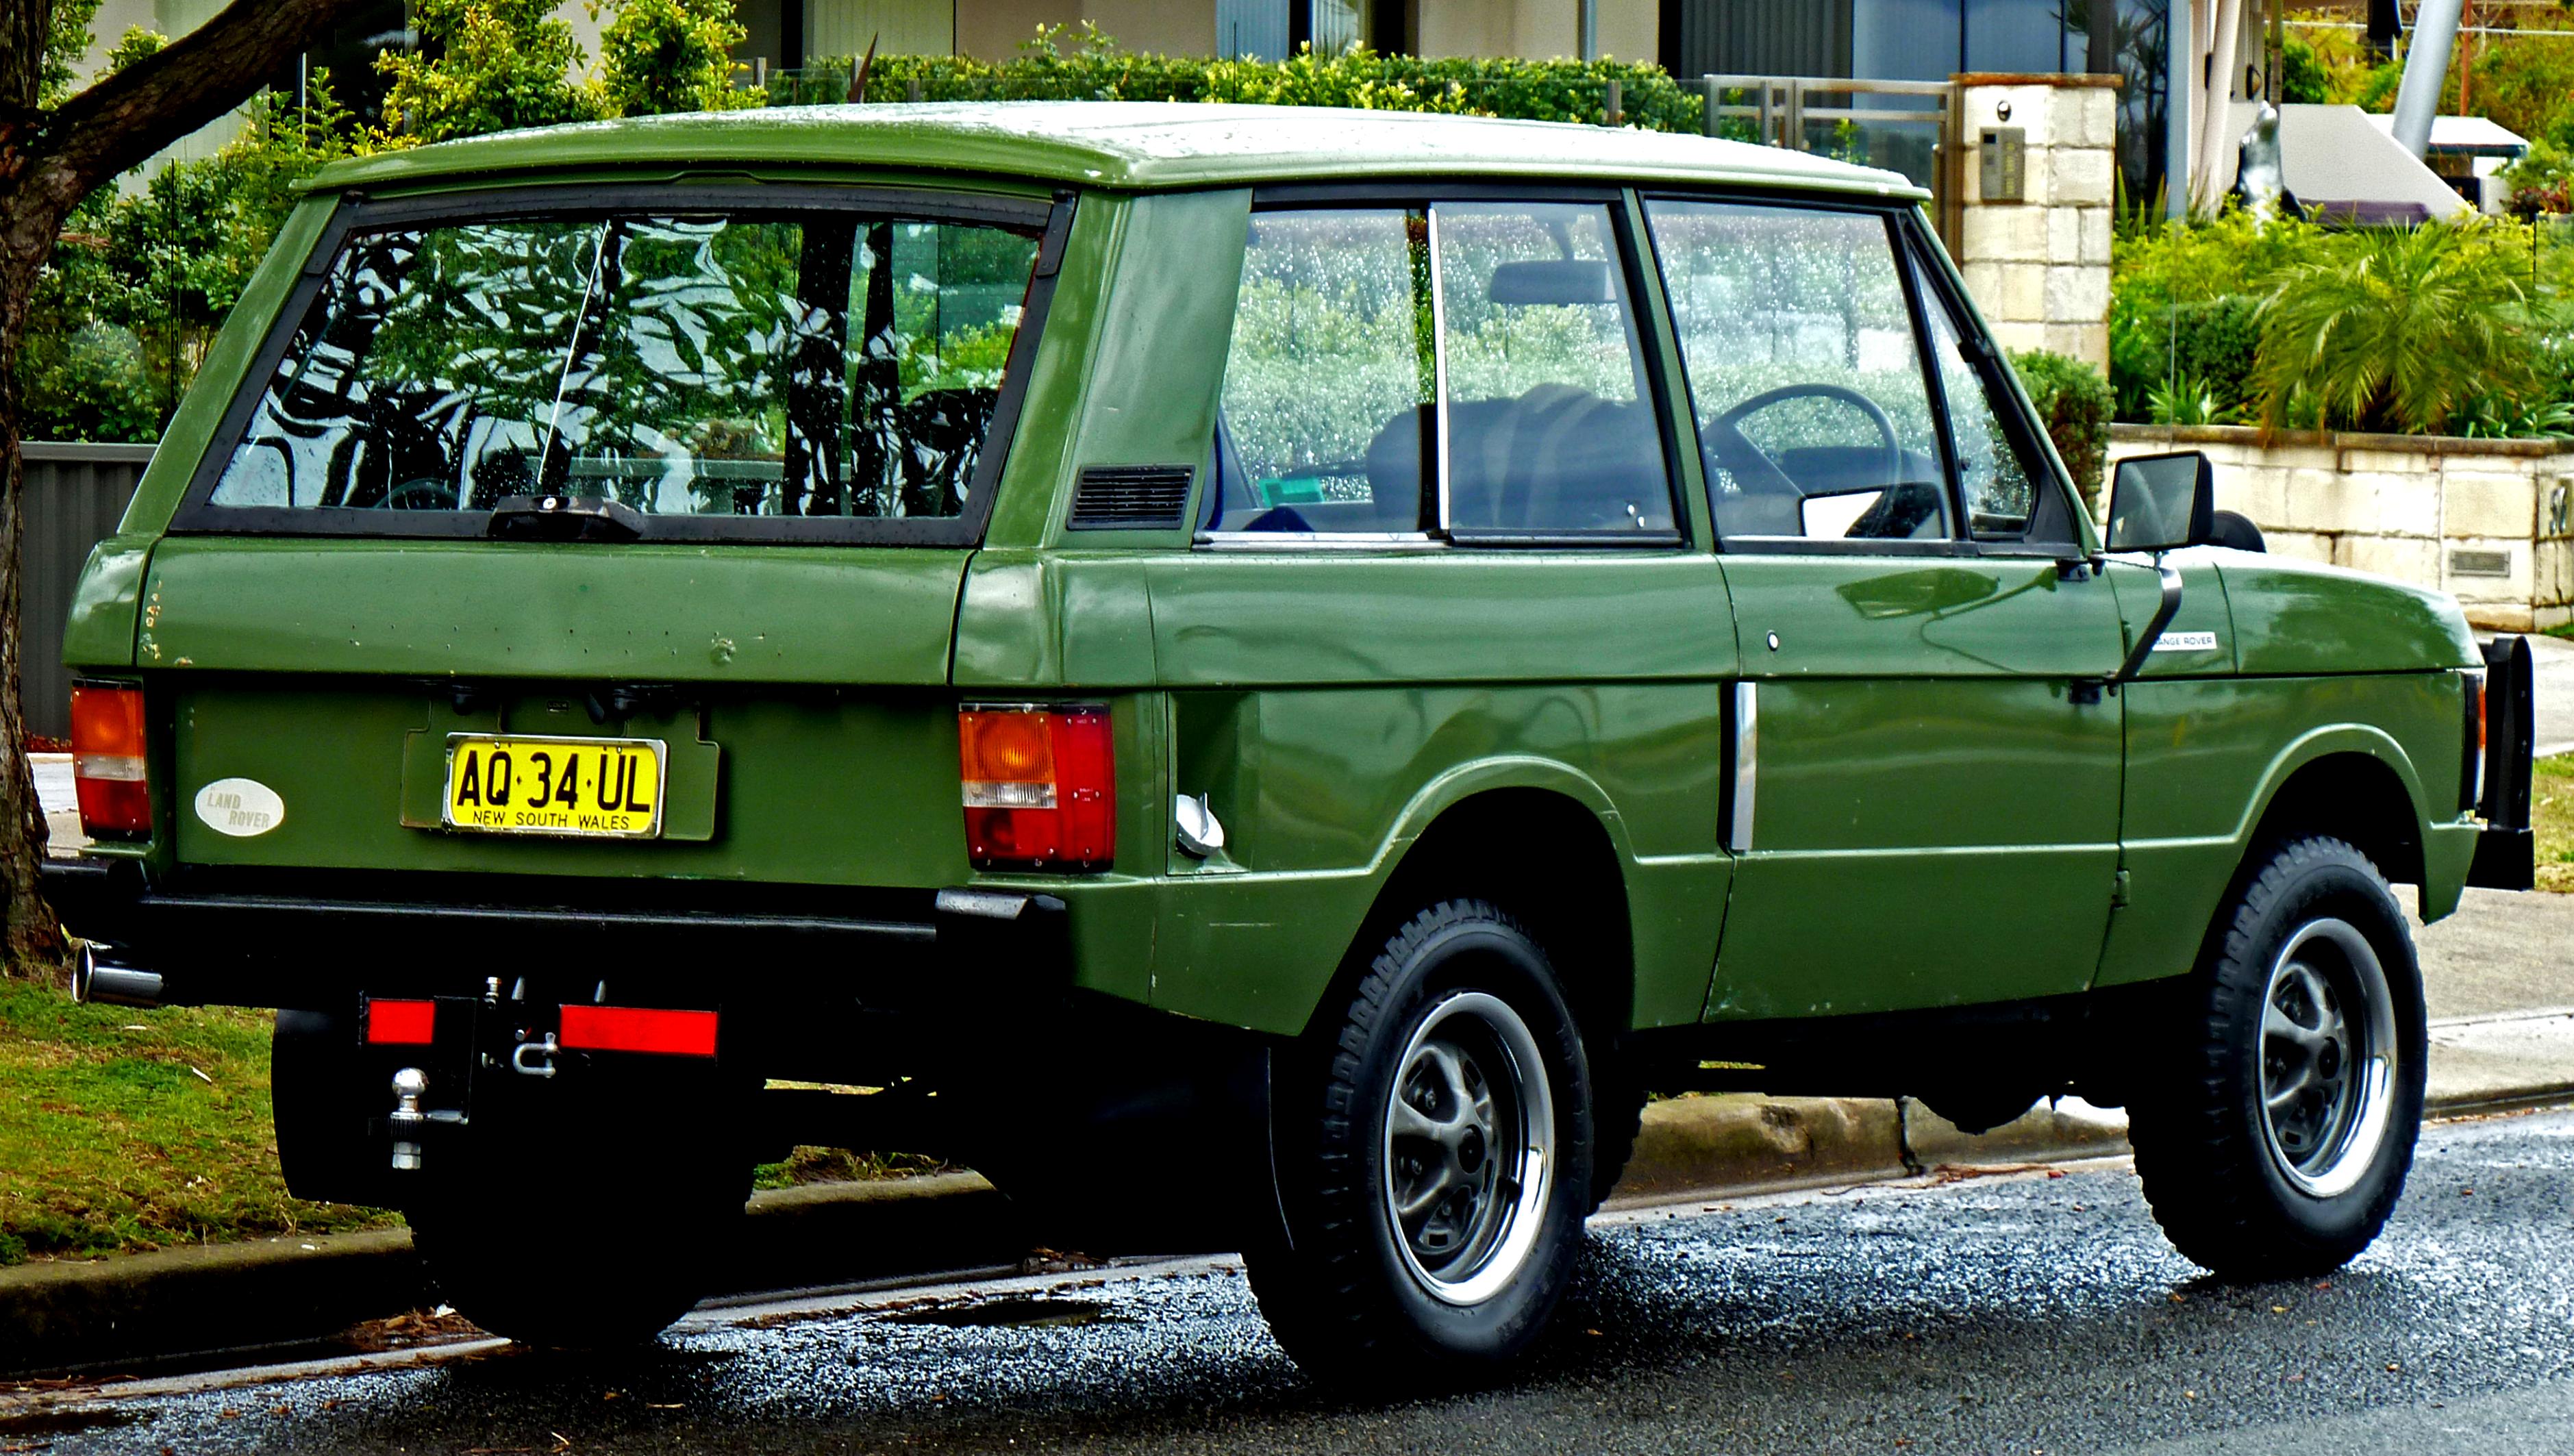 Land Rover Range Rover 1988 #2